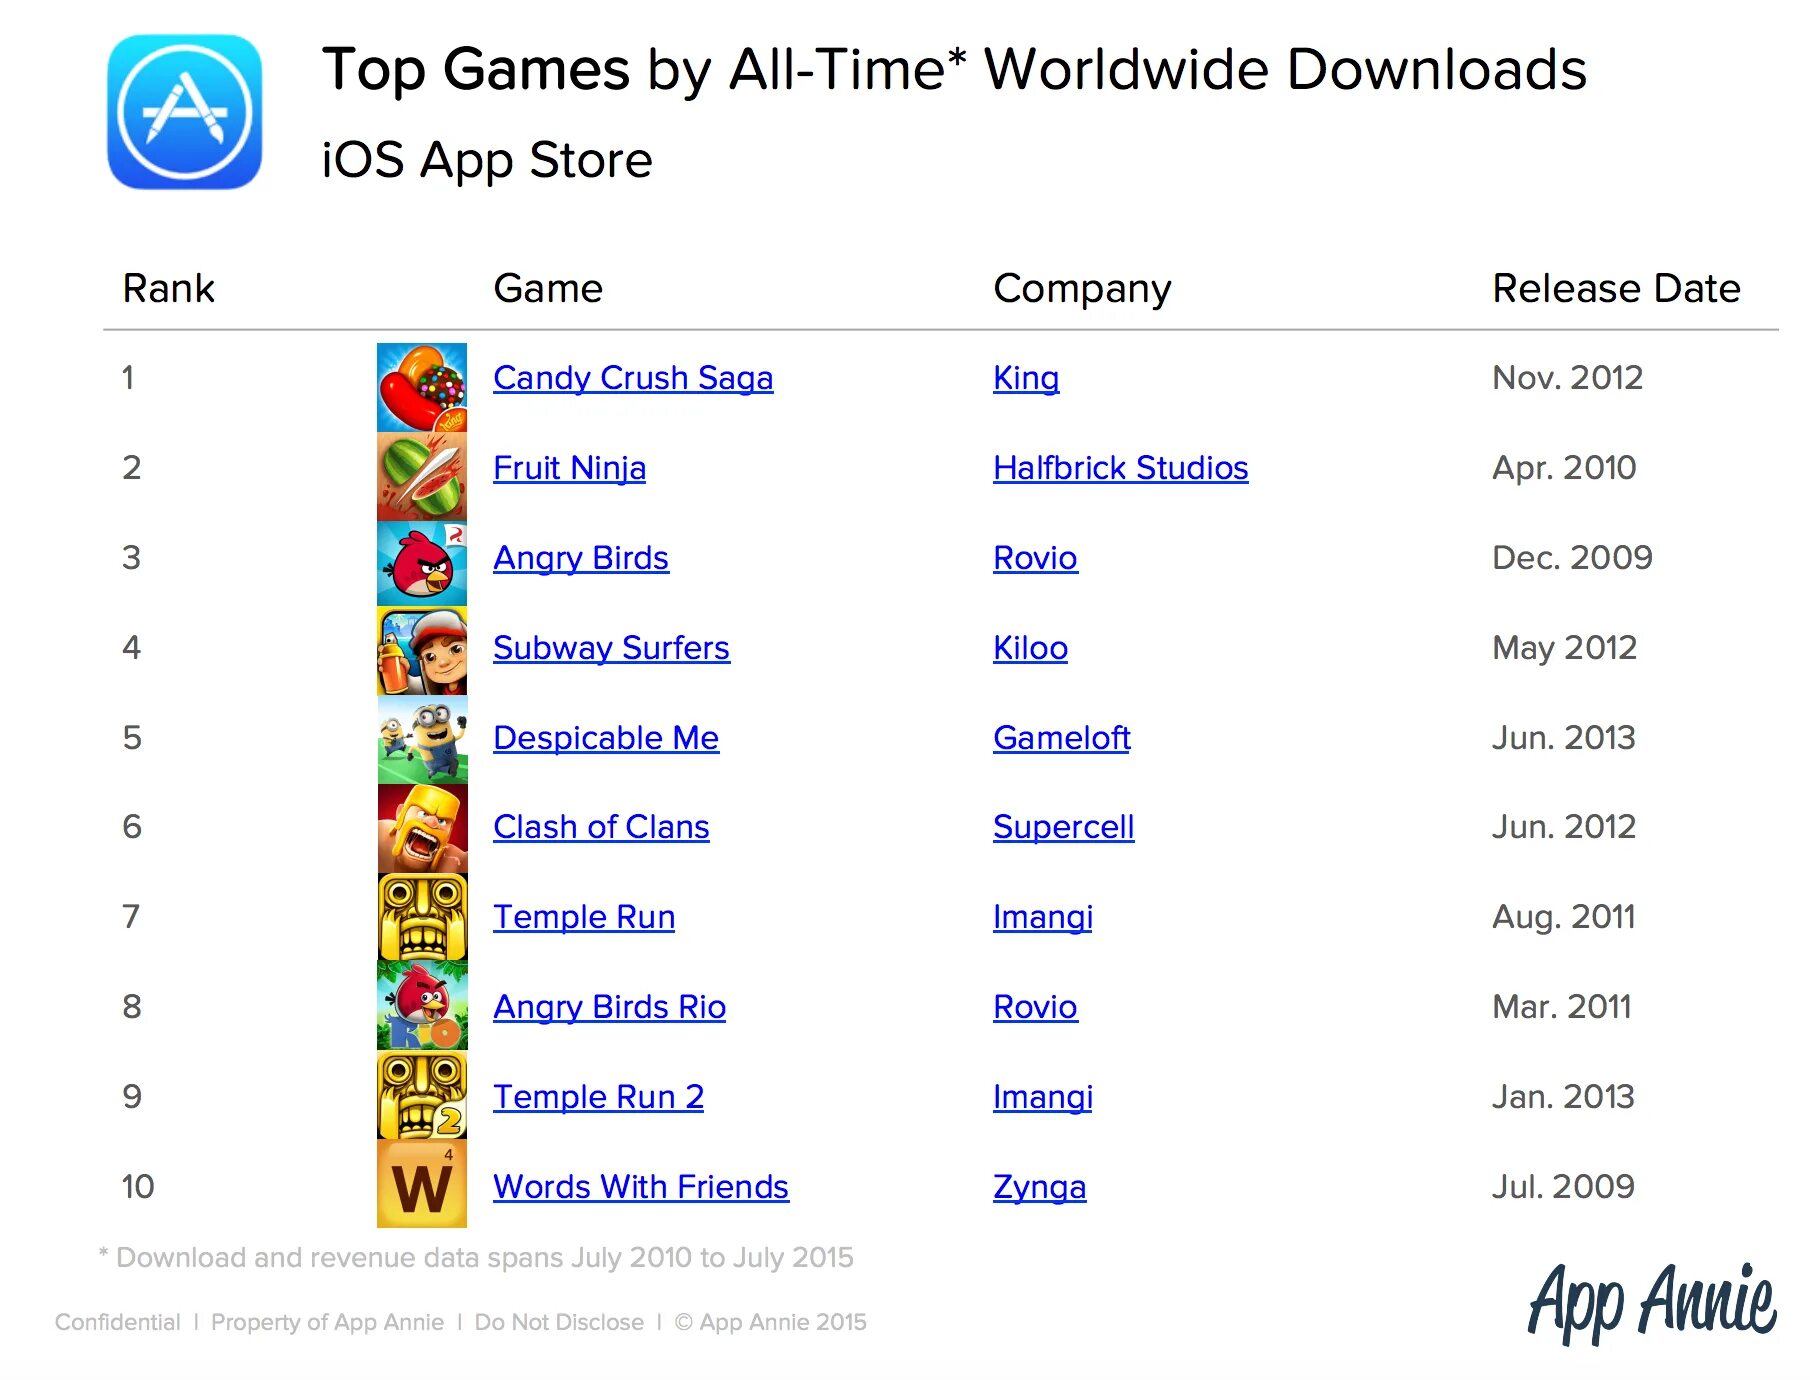 Список самых популярных игр. Популярные игры список. Список самых популярных мобильных игр. Какая игра на 1 месте.